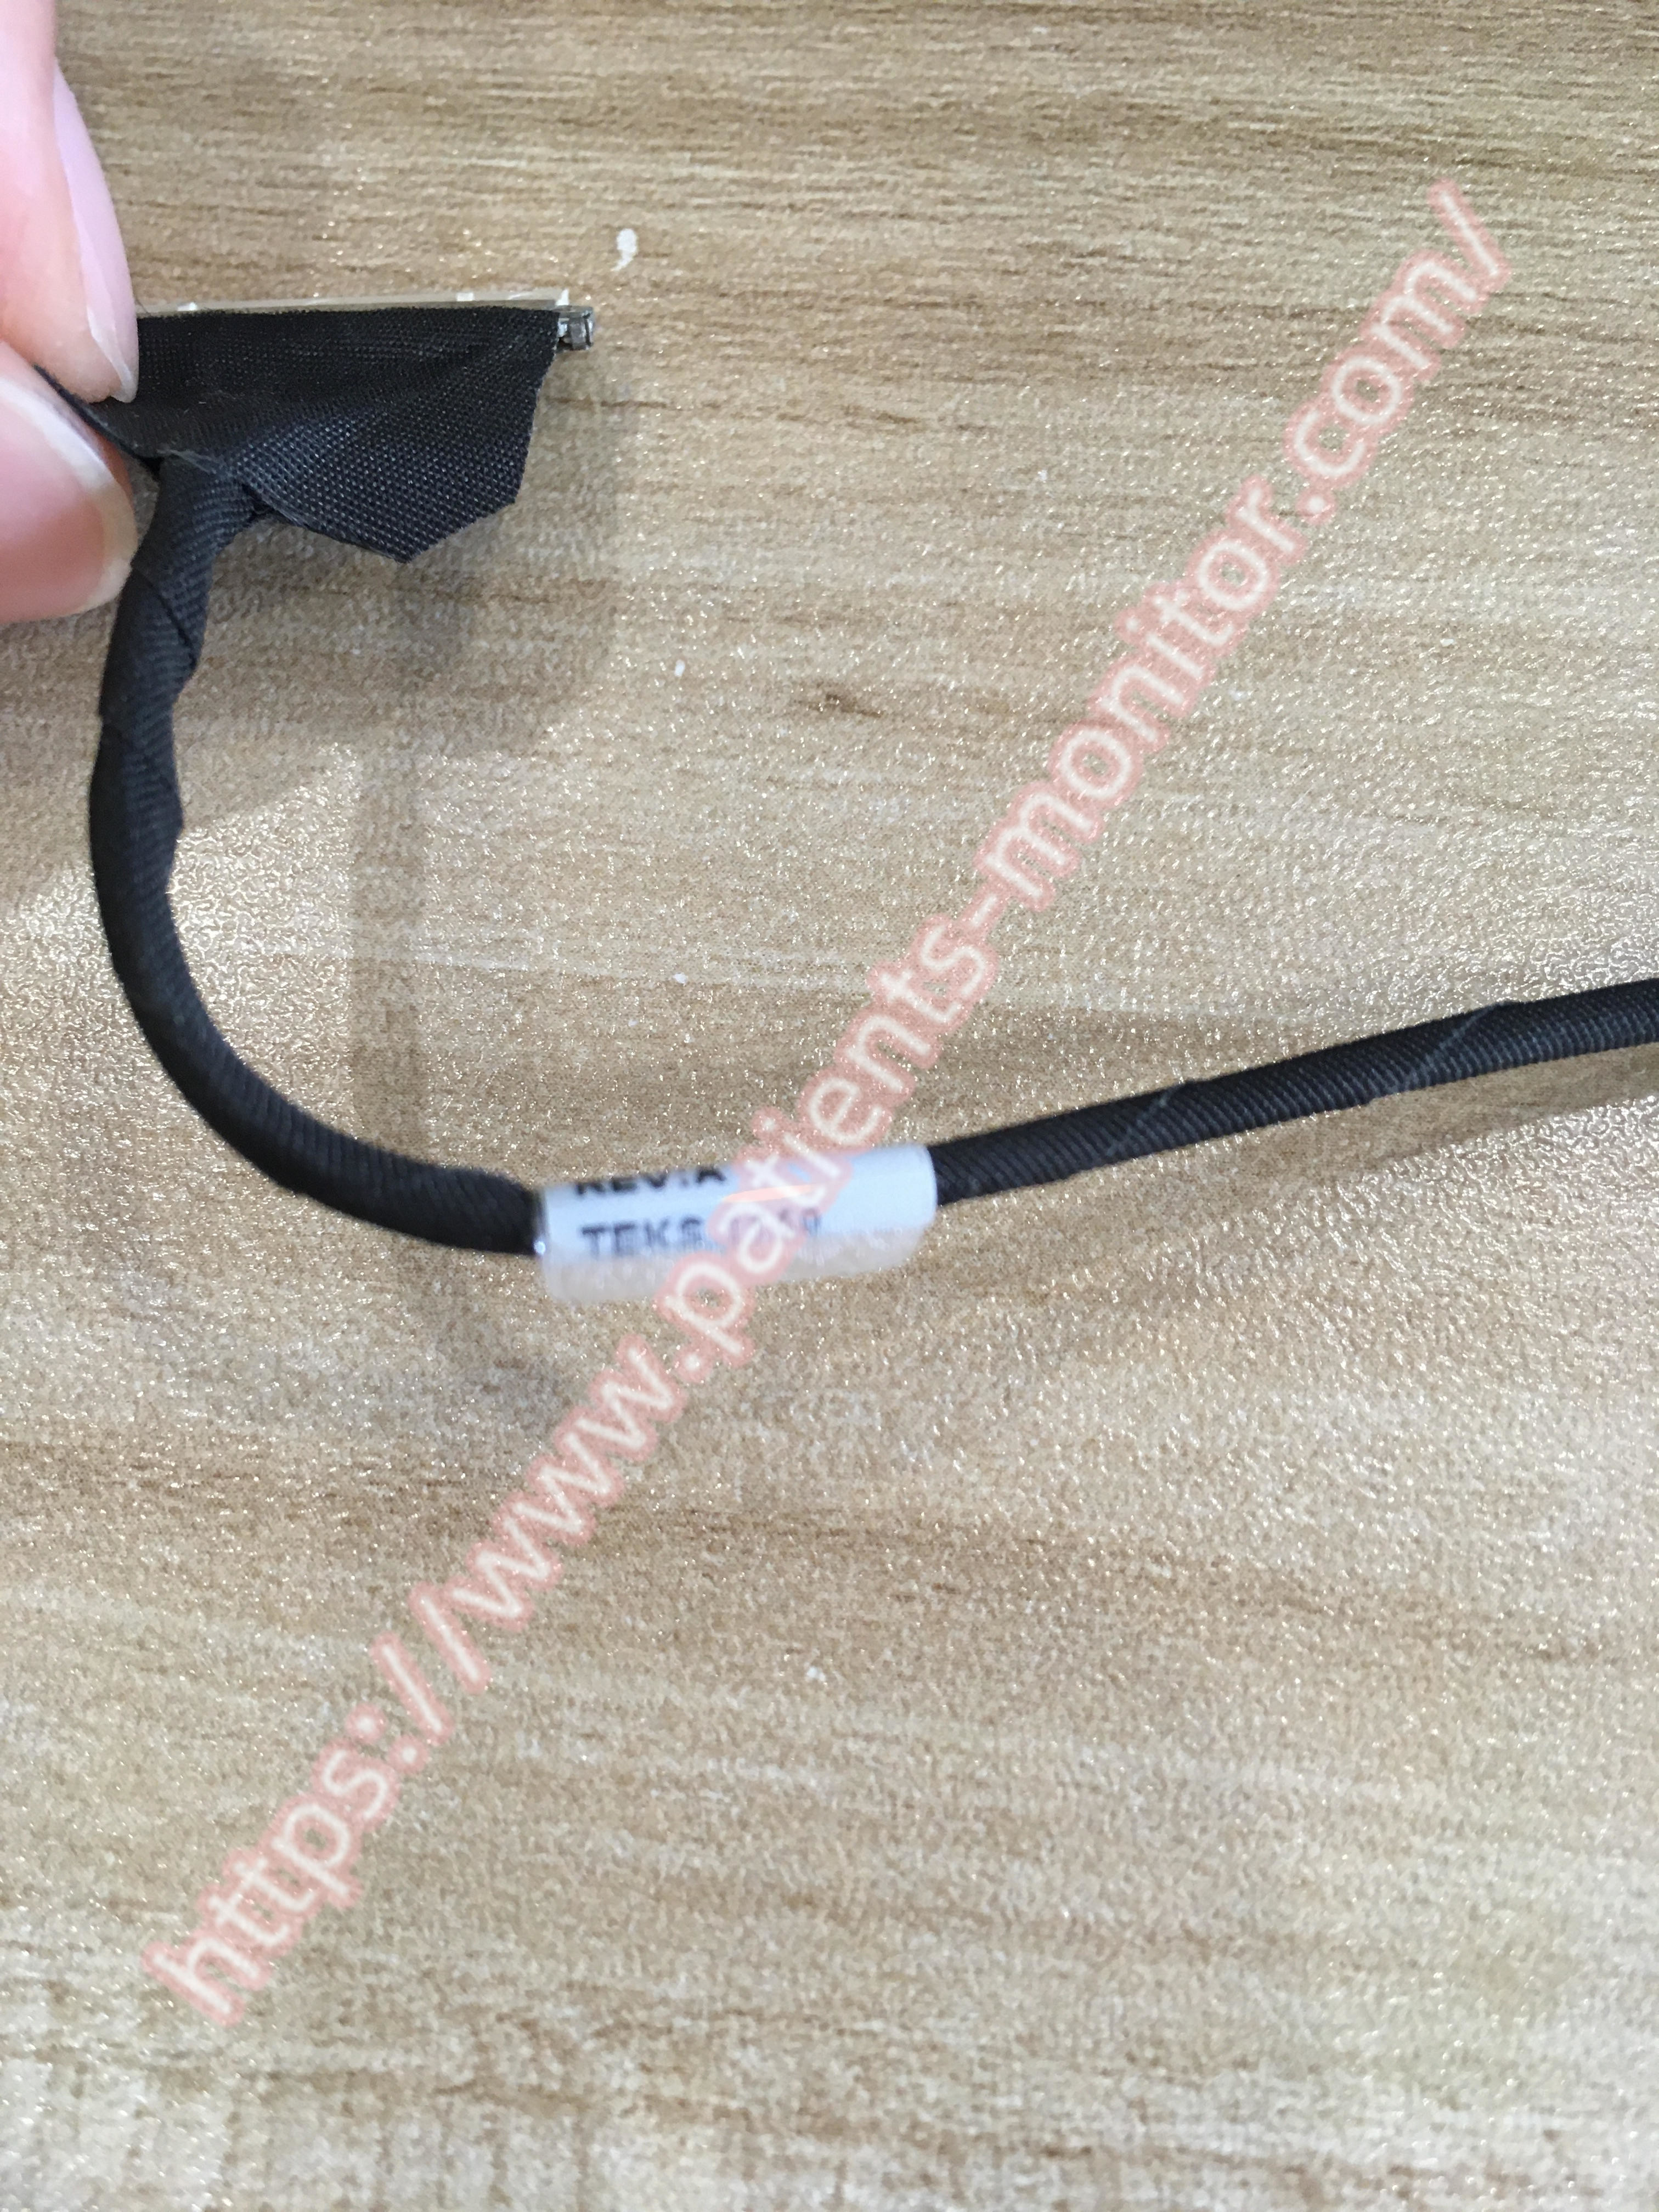 Kabel philip VM6 LVDS Peralatan Medis Hitam Untuk Rumah Sakit